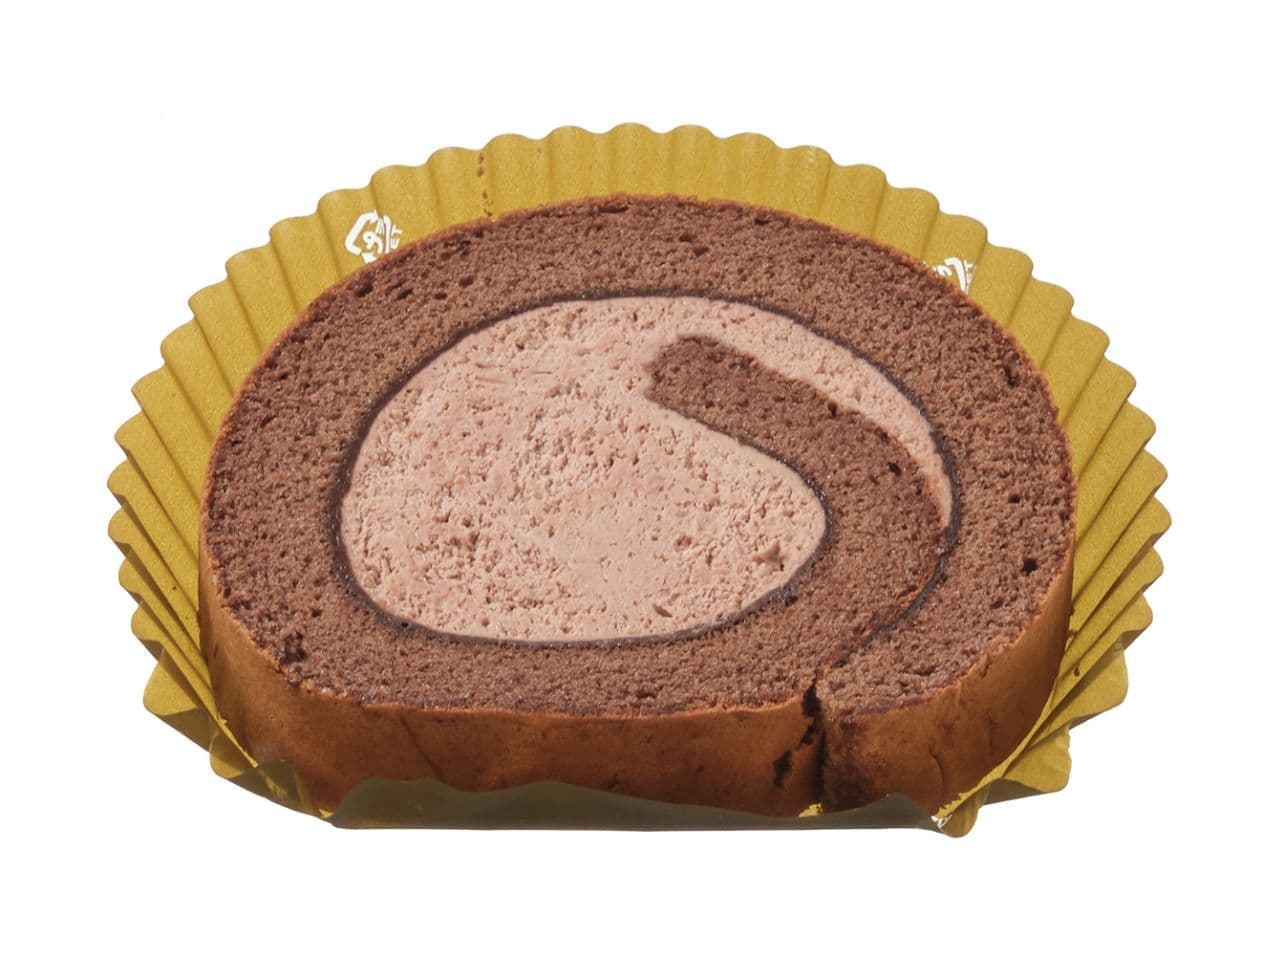 セブン-イレブン「ふわっと食感のチョコロールケーキ」